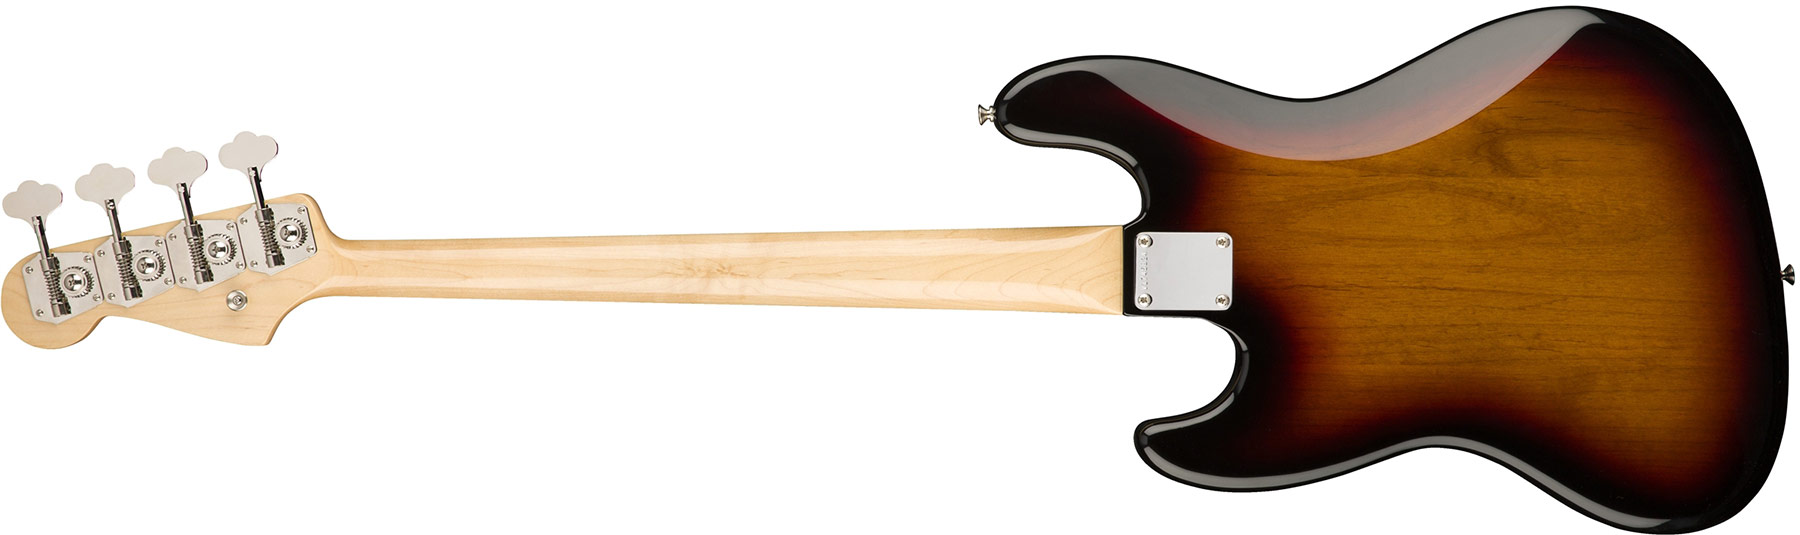 Fender Jazz Bass '60s American Original Usa Rw - 3-color Sunburst - Solidbody E-bass - Variation 1